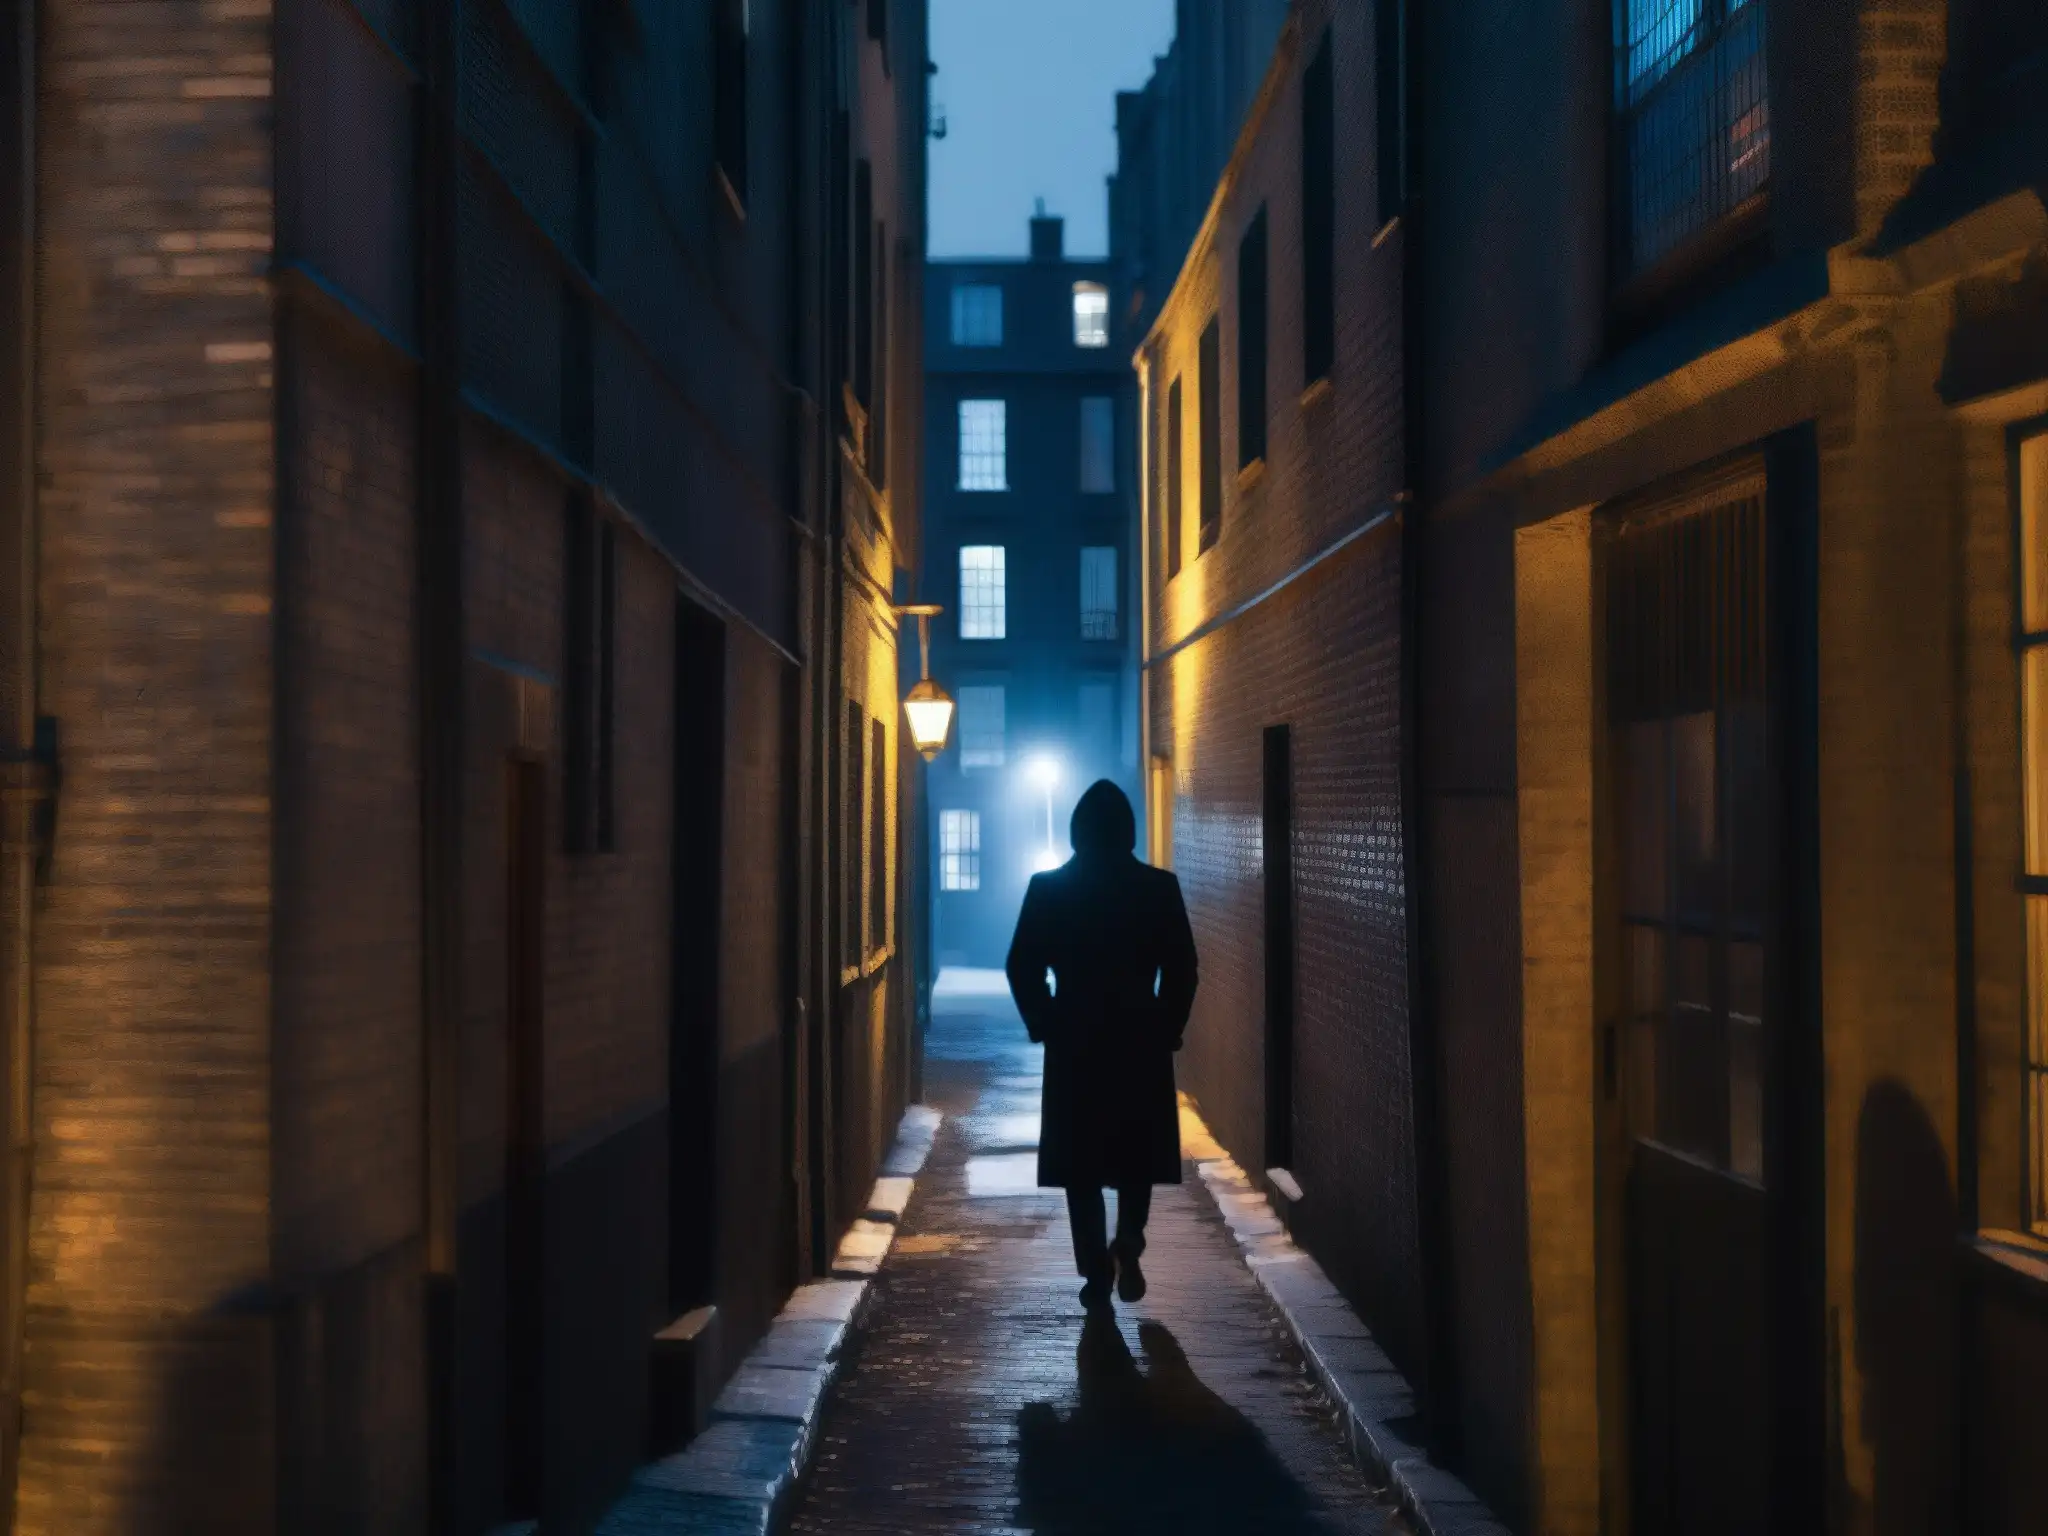 Un callejón nocturno sombrío en la ciudad con una figura misteriosa